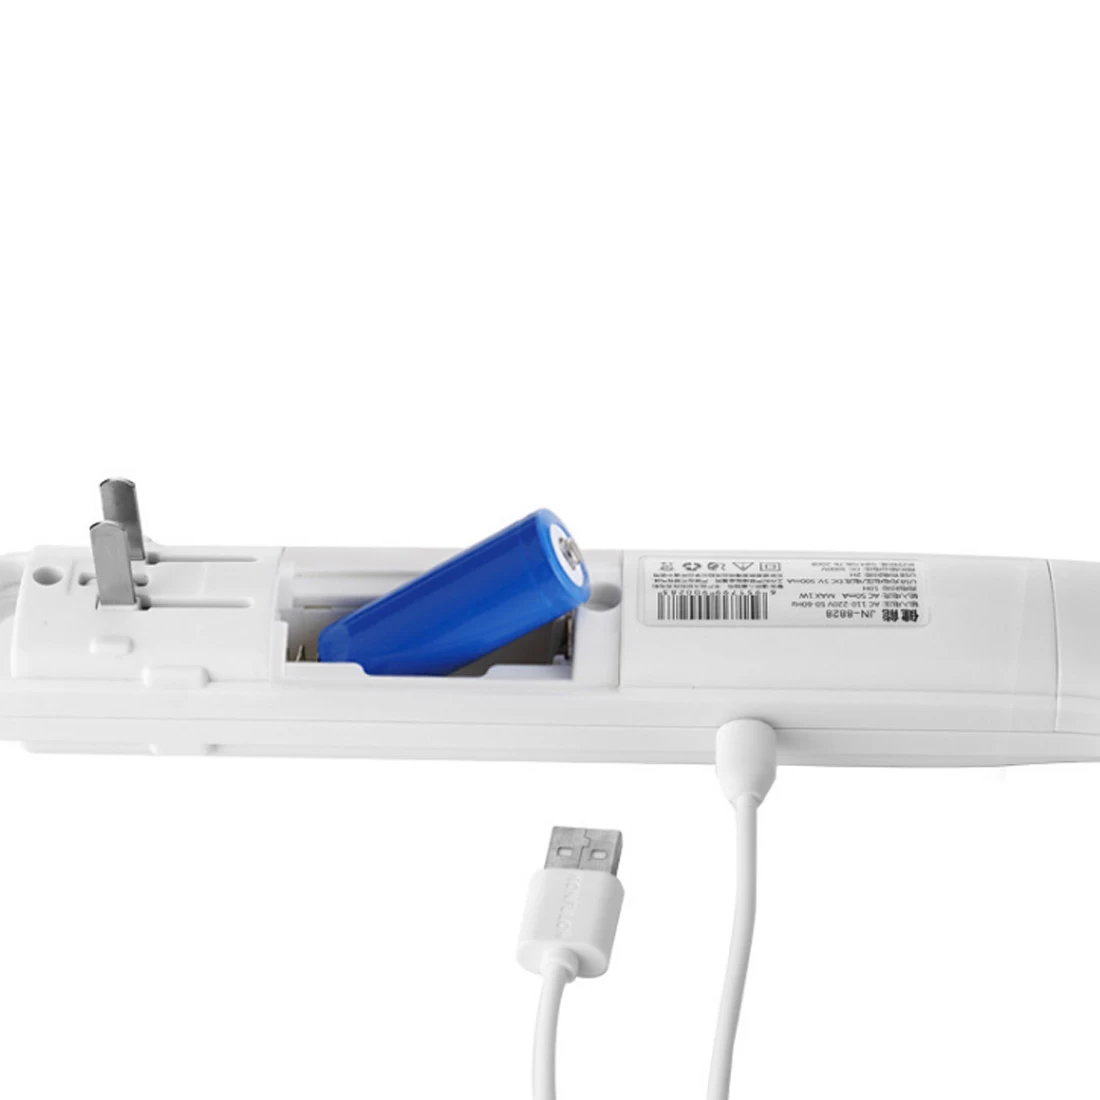 USB многофункциональный большой размер Москитная мухобойка Zapper ракетка с перезаряжаемой литиевой батареей-мятный синий/зеленый/розовый румяна